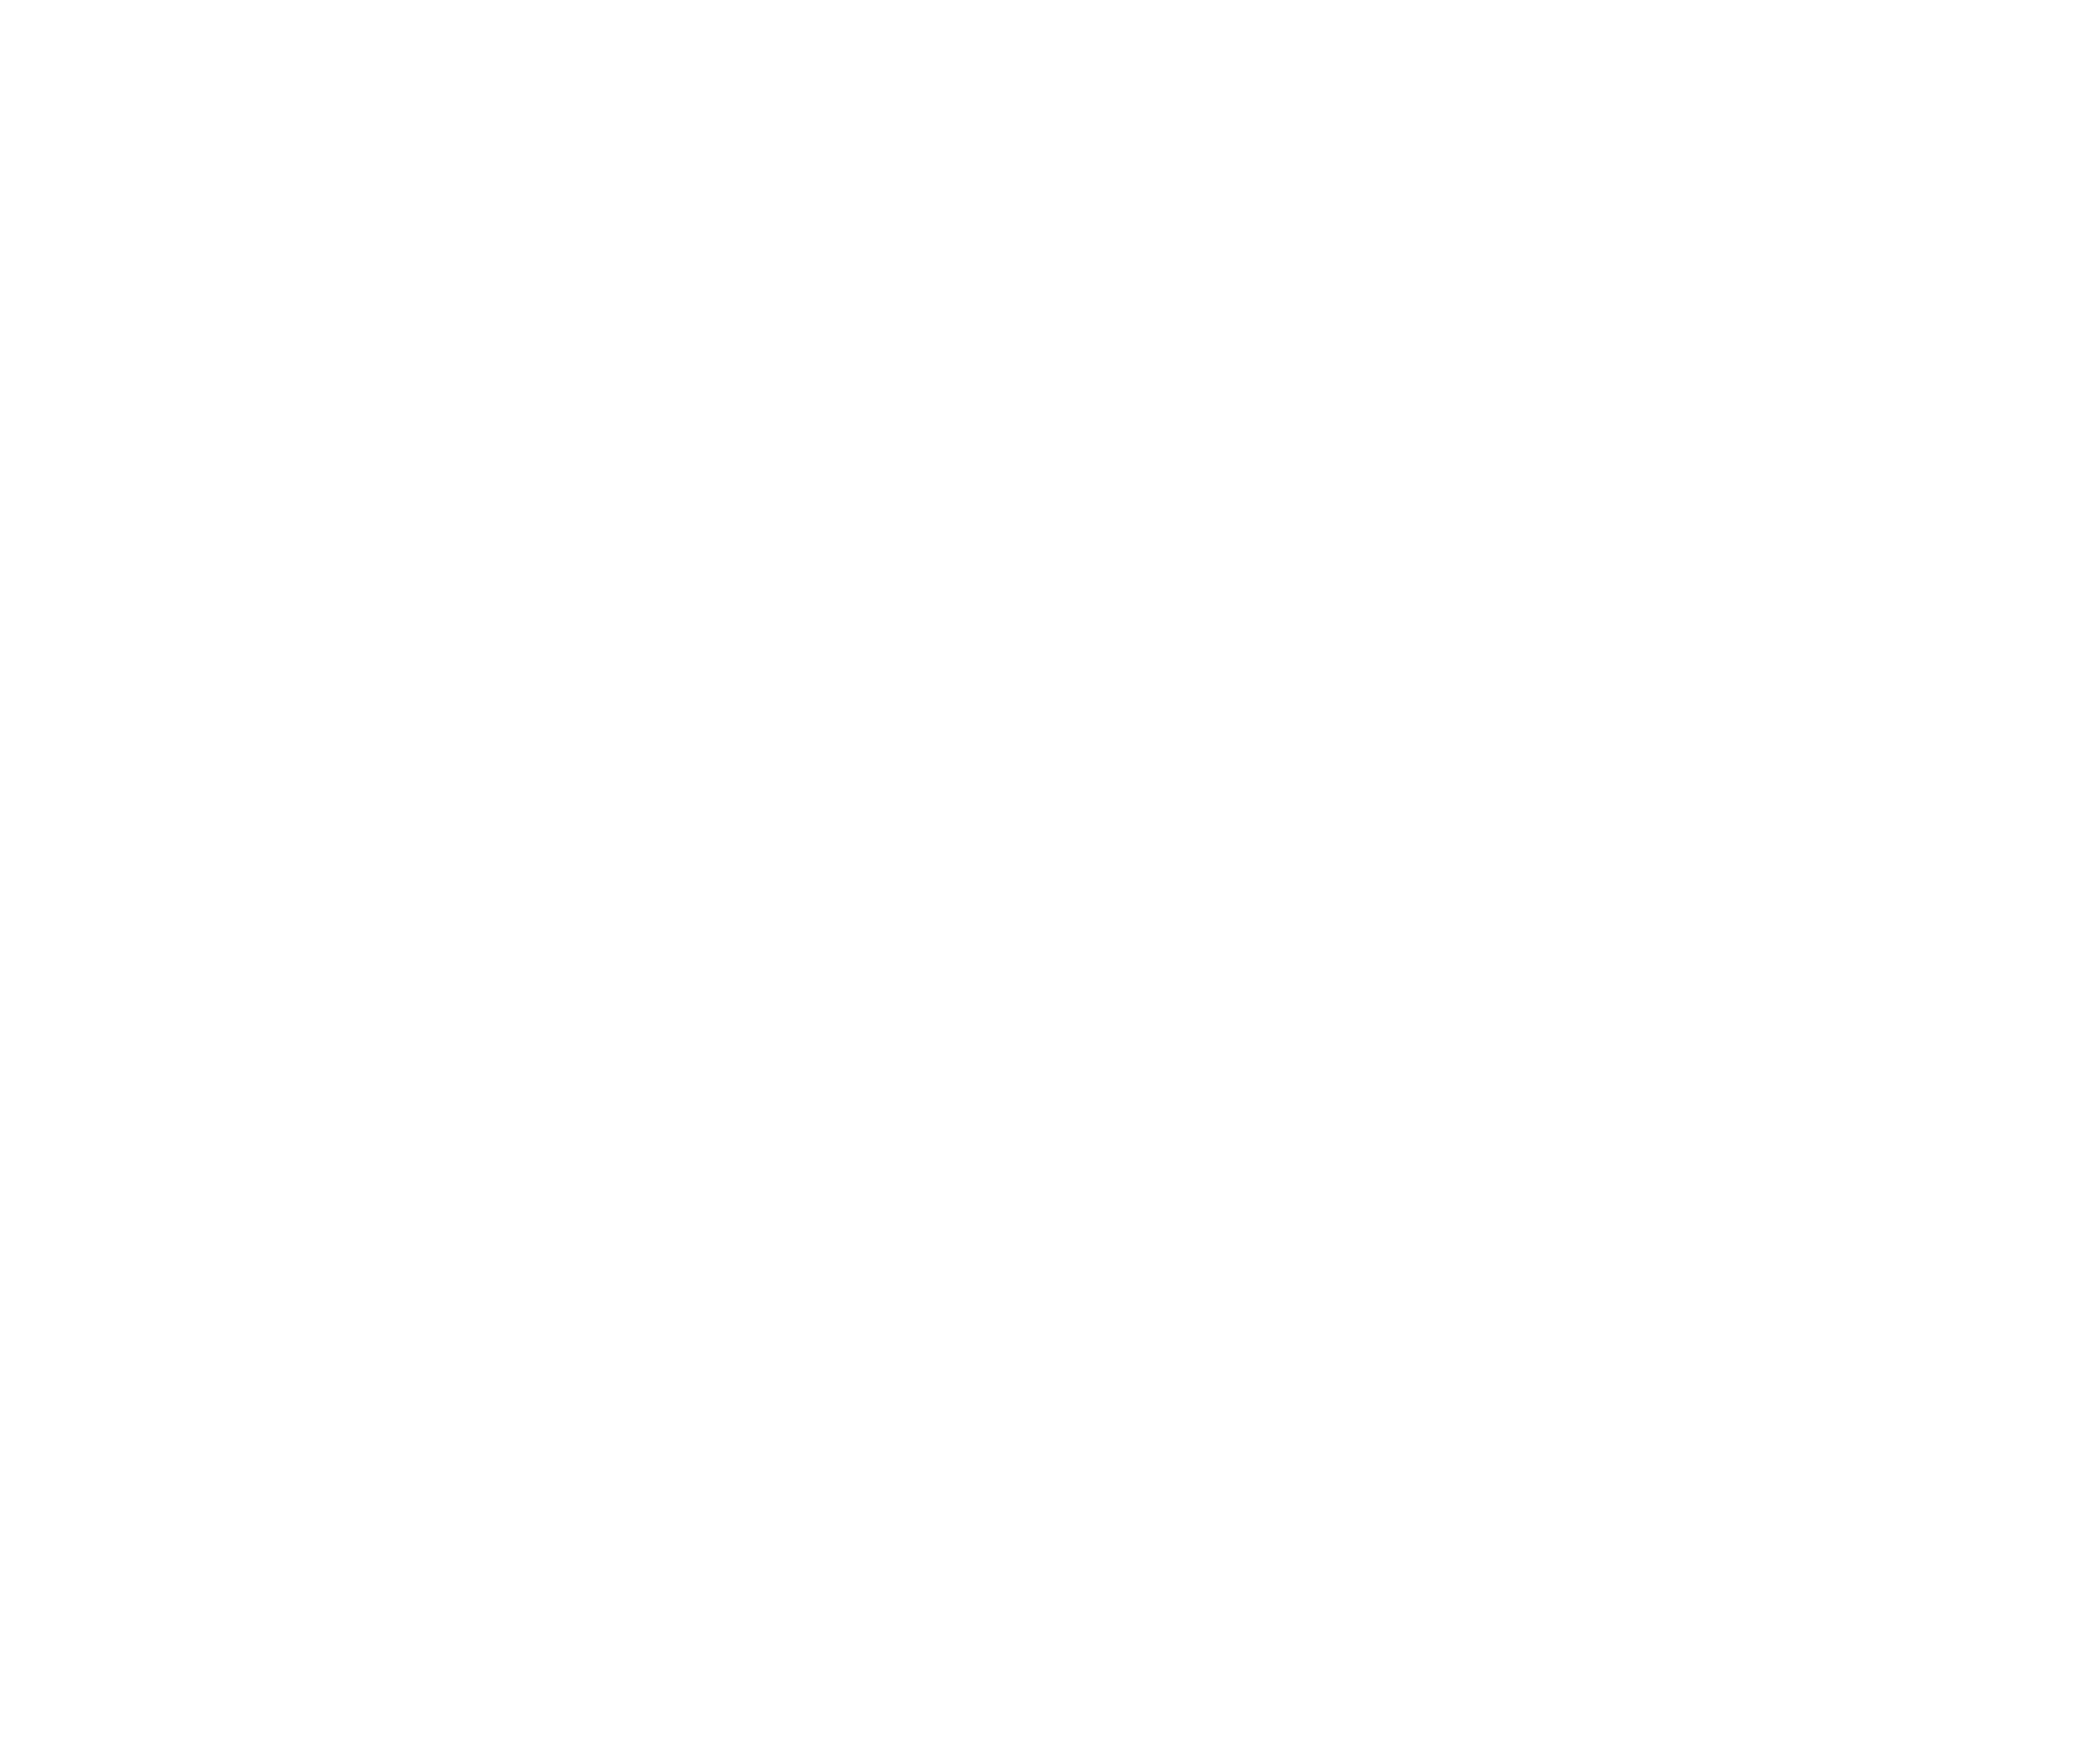 deck builder gainesville ga fence companies contractors best near me services georgia elite fence deck